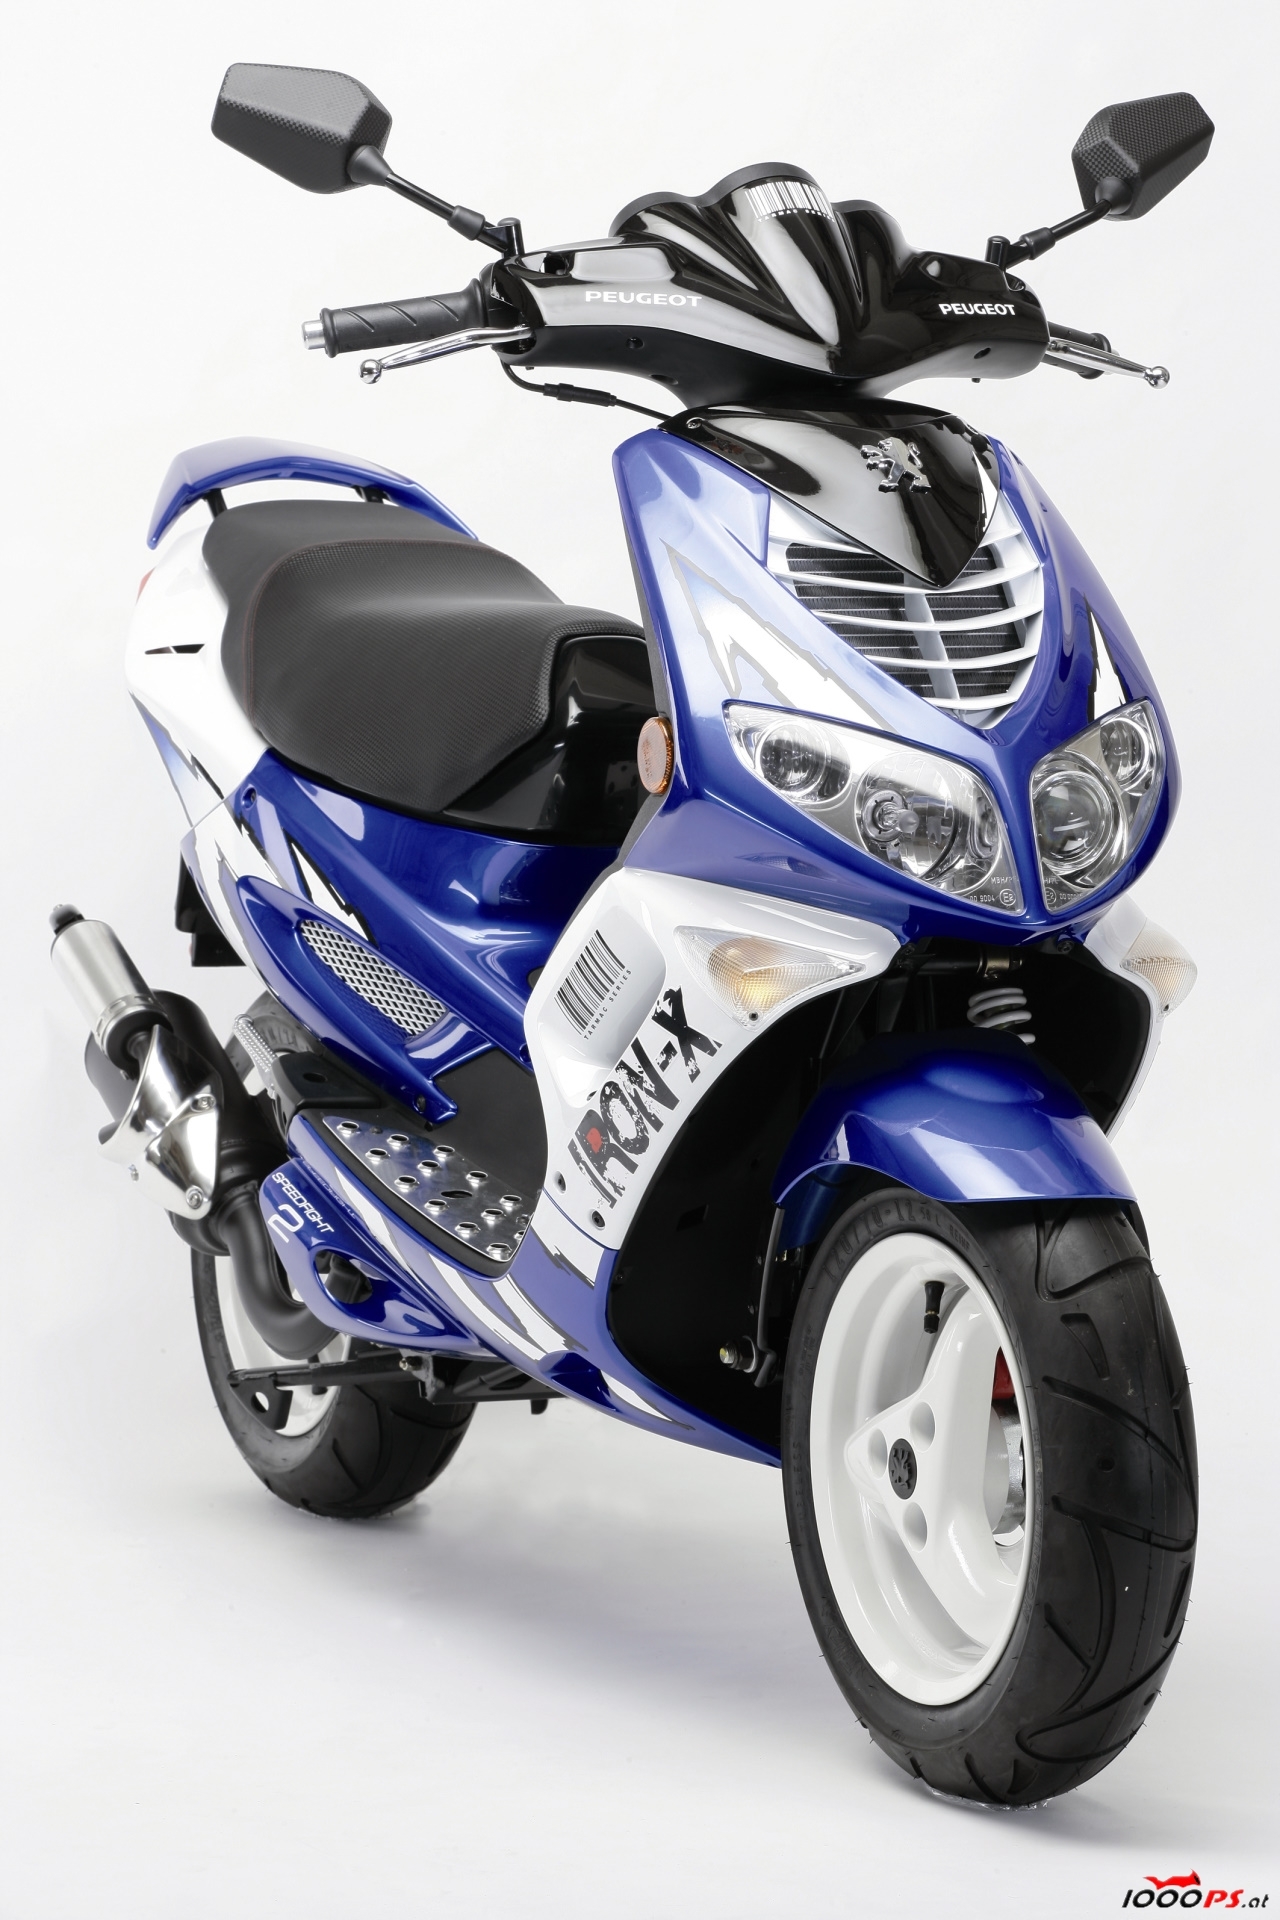 Verkleidung Schutzblech Kotflügel Carbonfarben für Peugeot Speedfight 2 NEU  *  DISA Mopedstore Neu- und Gebrauchtteile für Mopeds, Mofas, Roller und  Motorräder